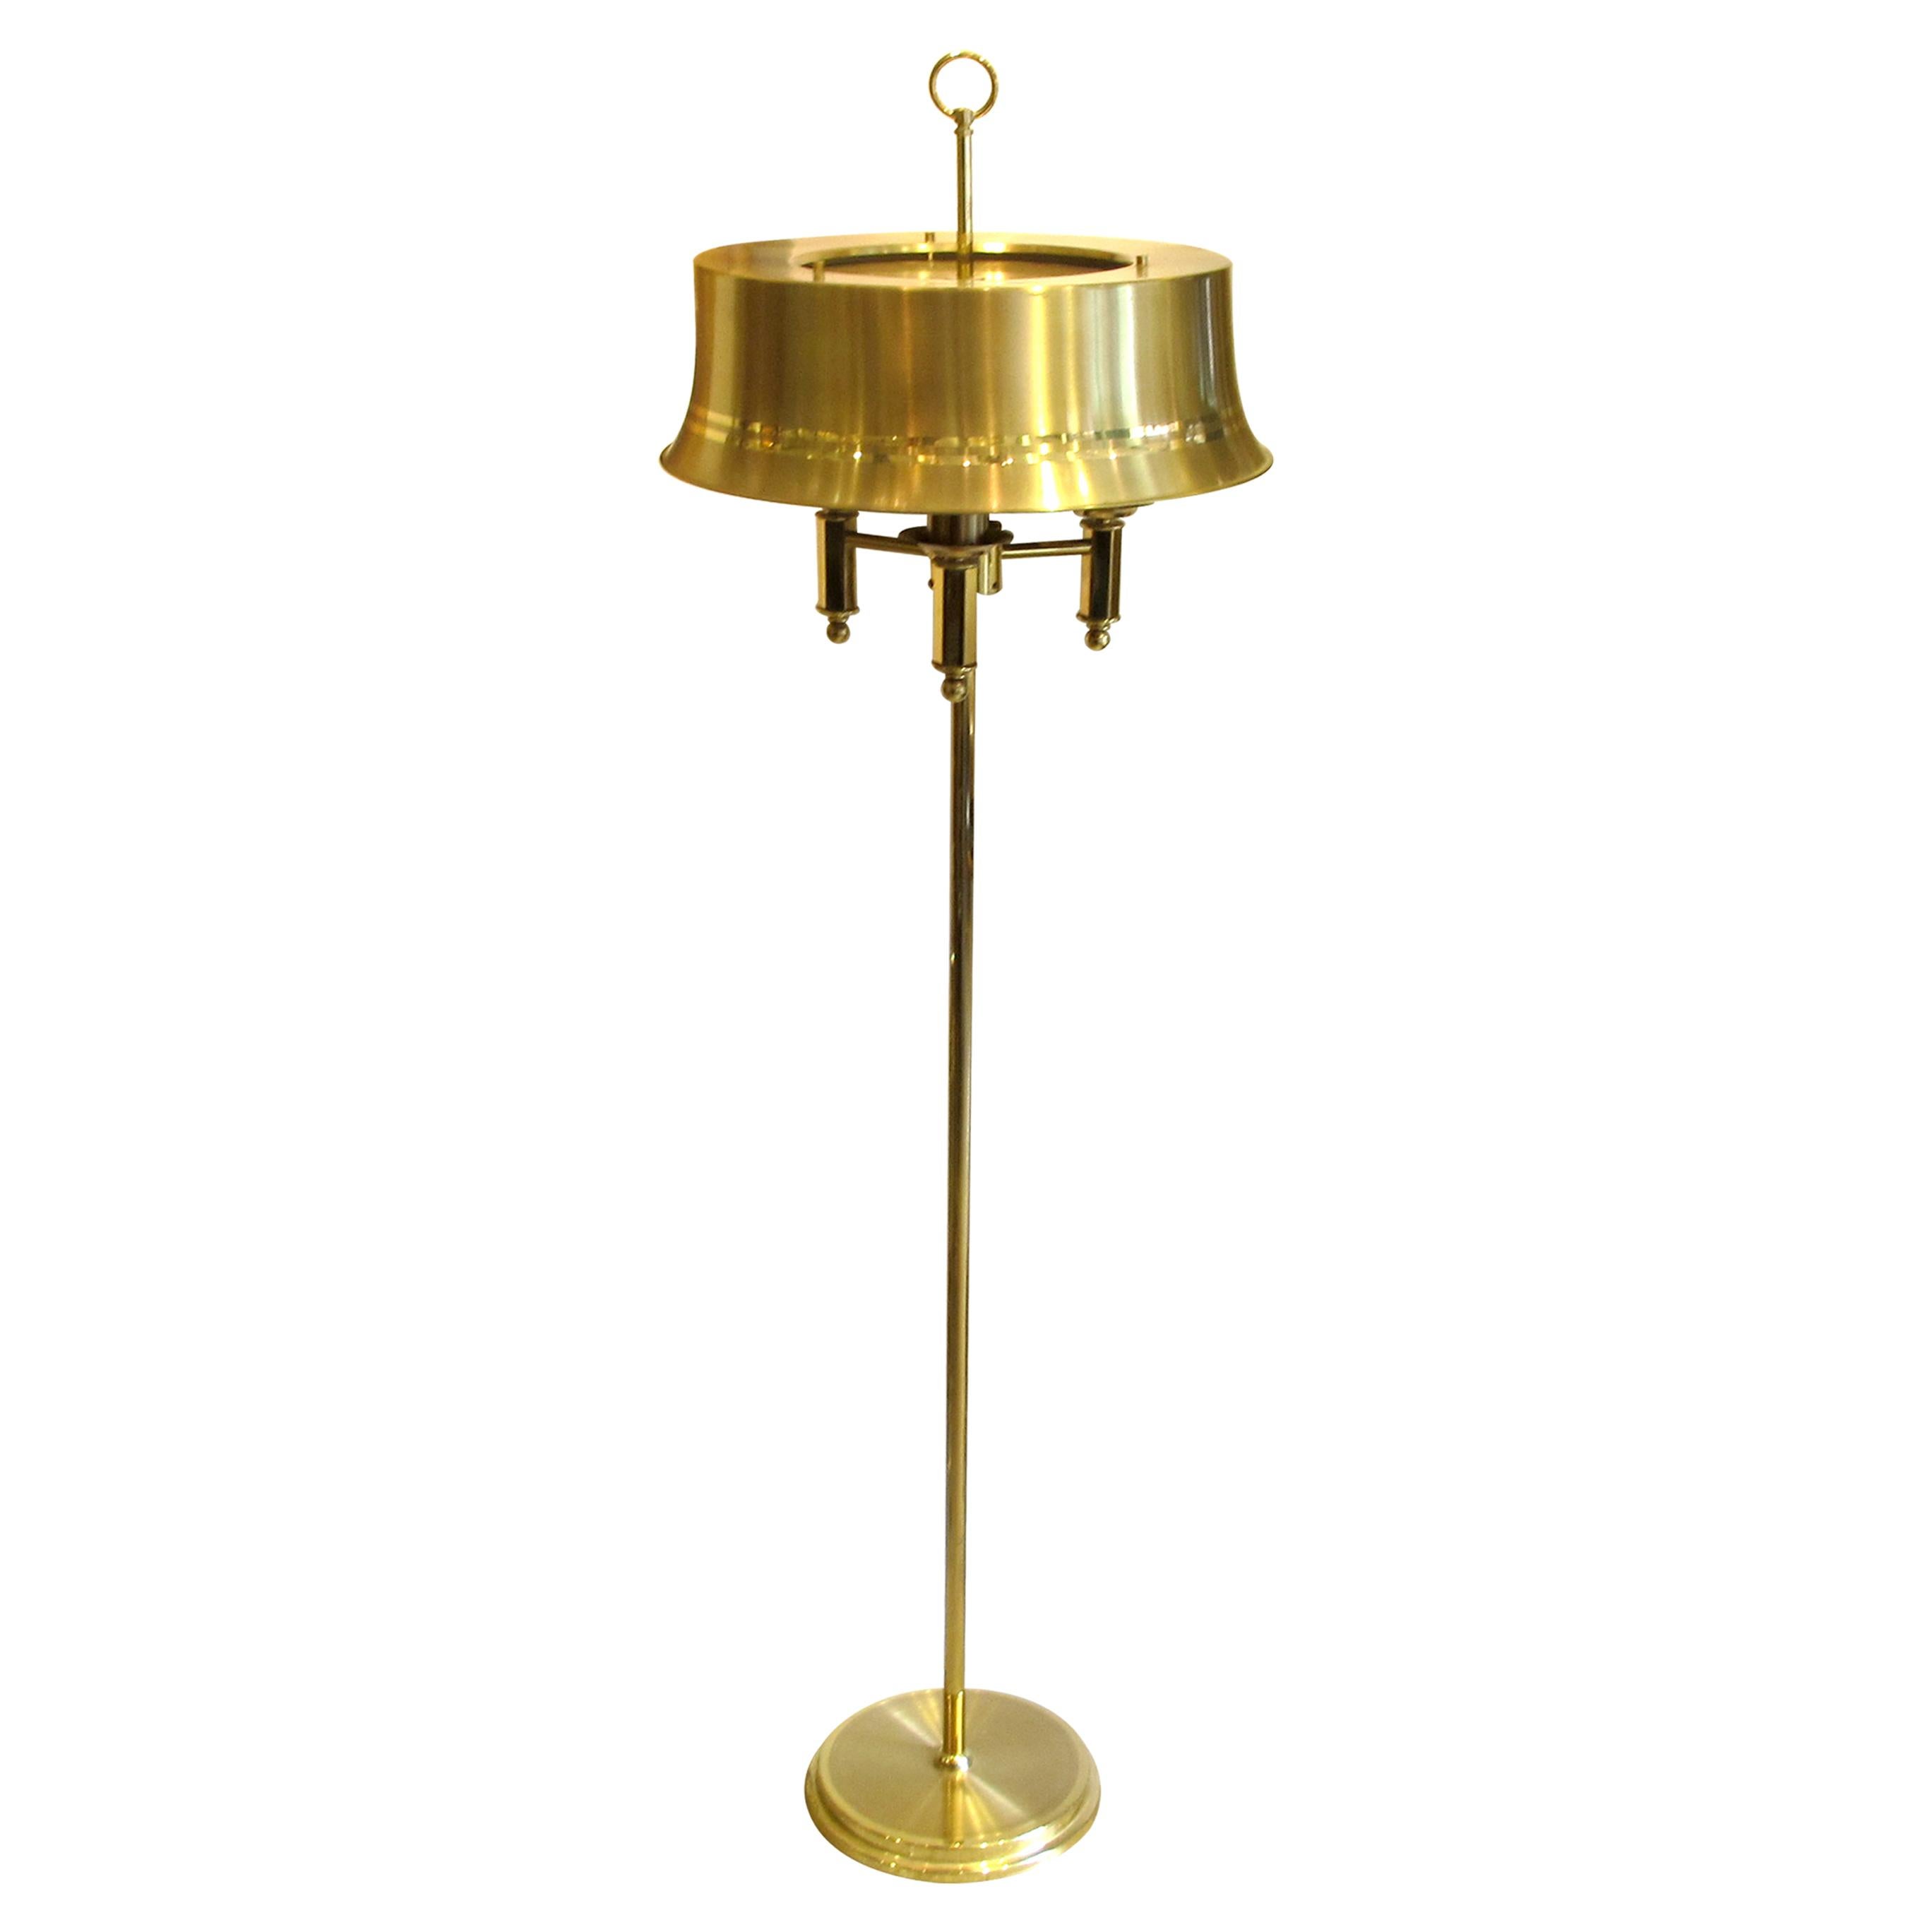 1970er Jahre schwedisch, neoklassischen englischen Stil sehr elegant Paar Messing Stehlampen. Jede große hutförmige Lampe ist mit drei Glühbirnen ausgestattet, die für eine warme und schöne Beleuchtung sorgen. Die Stehlampen sind in einem sehr guten